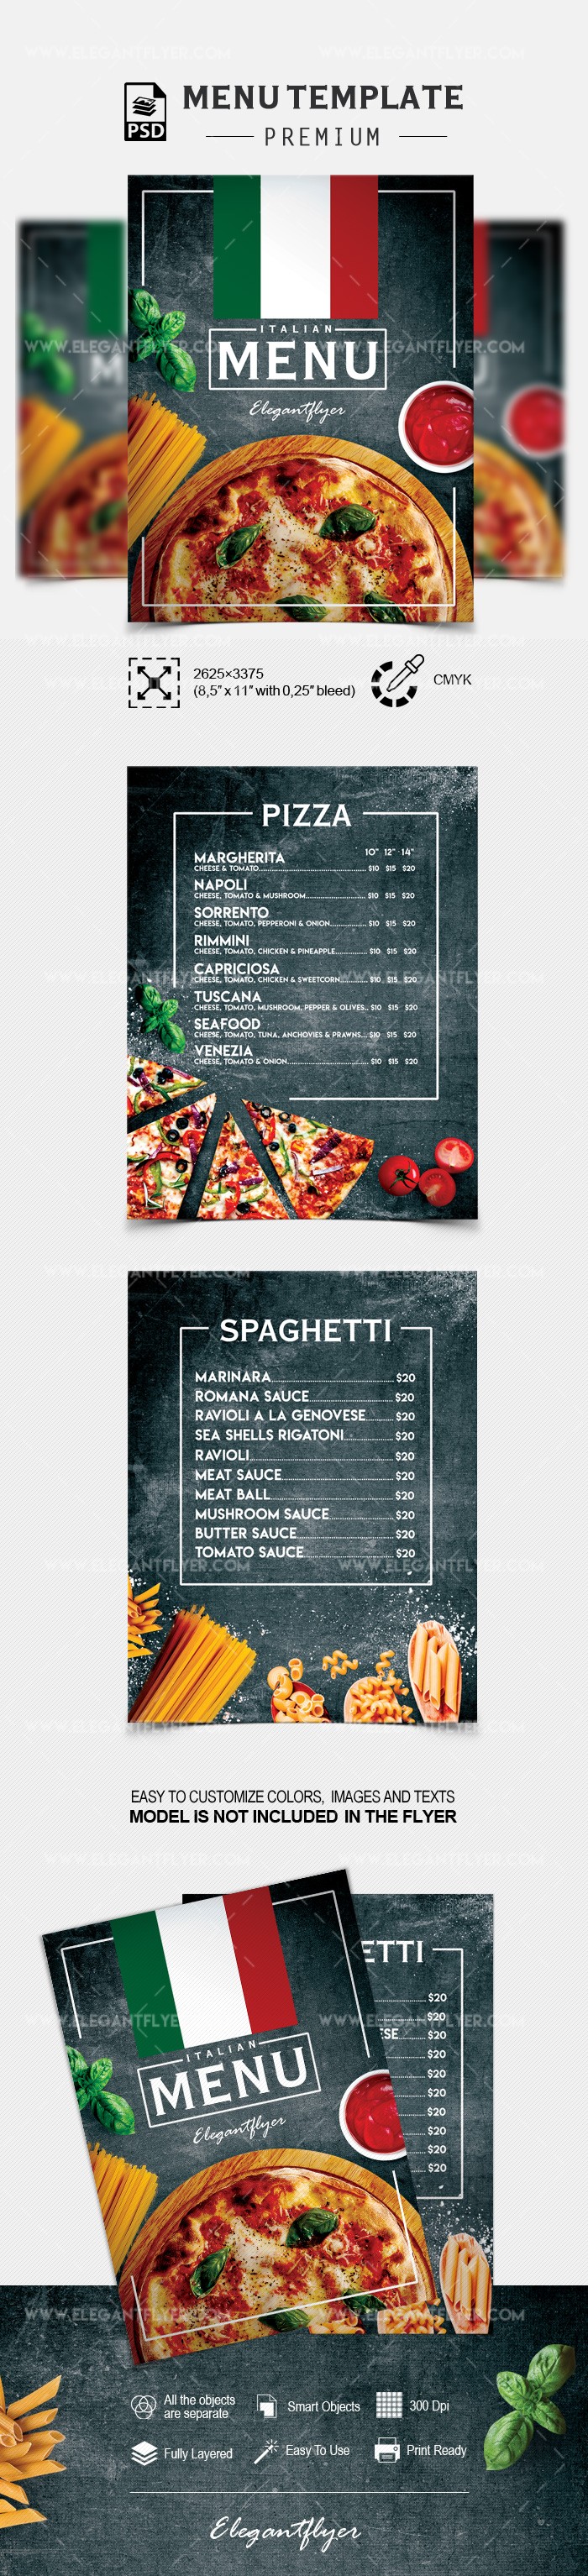 Menú de restaurante italiano by ElegantFlyer